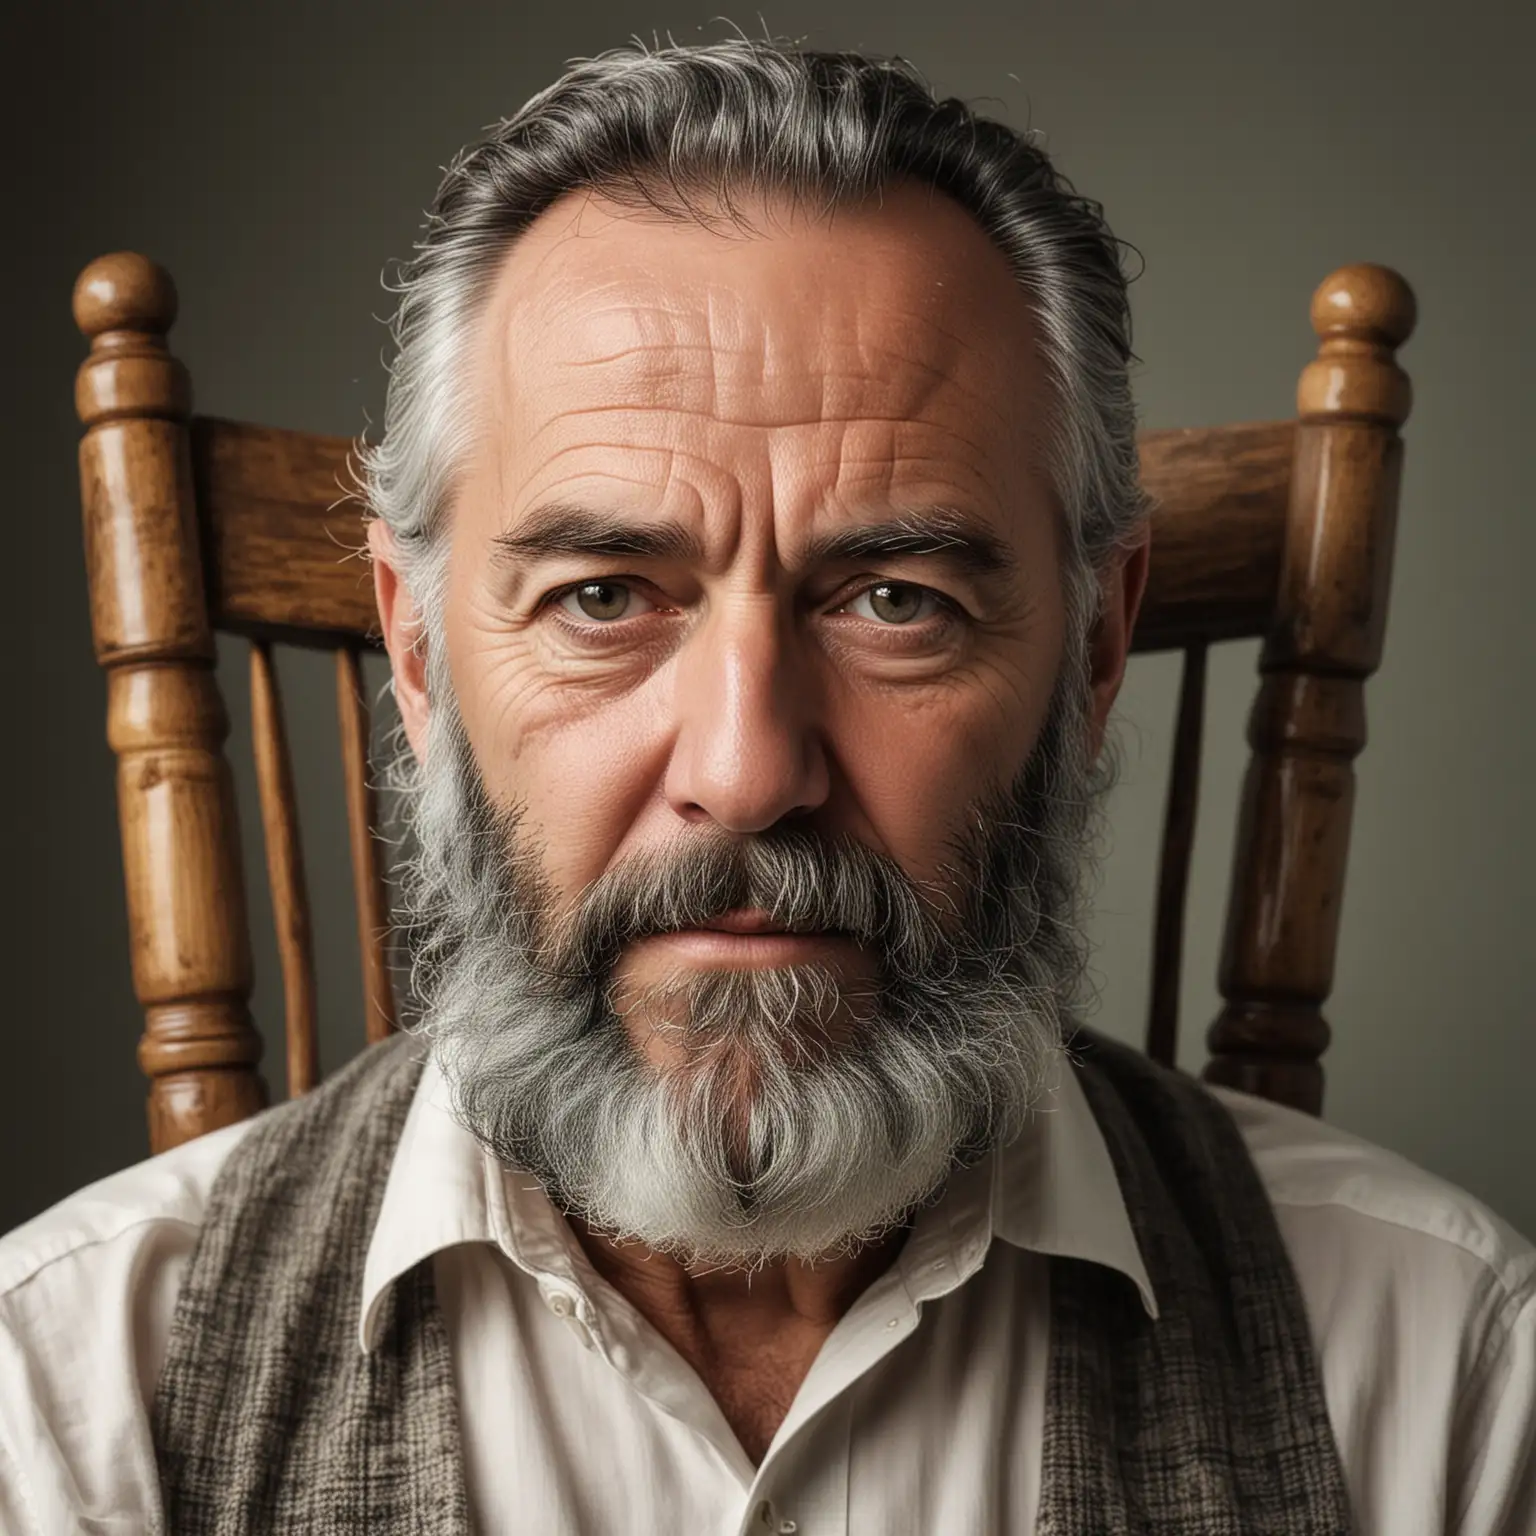 starszy Pan koło 50 lat z siwo czarną brodą buja się na fotelu.  Na zdjęciu twarz jest symetrycznie widoczna , widoczna jest również cała postać mężczyzny siedzącęgo na bujanym fotelu.